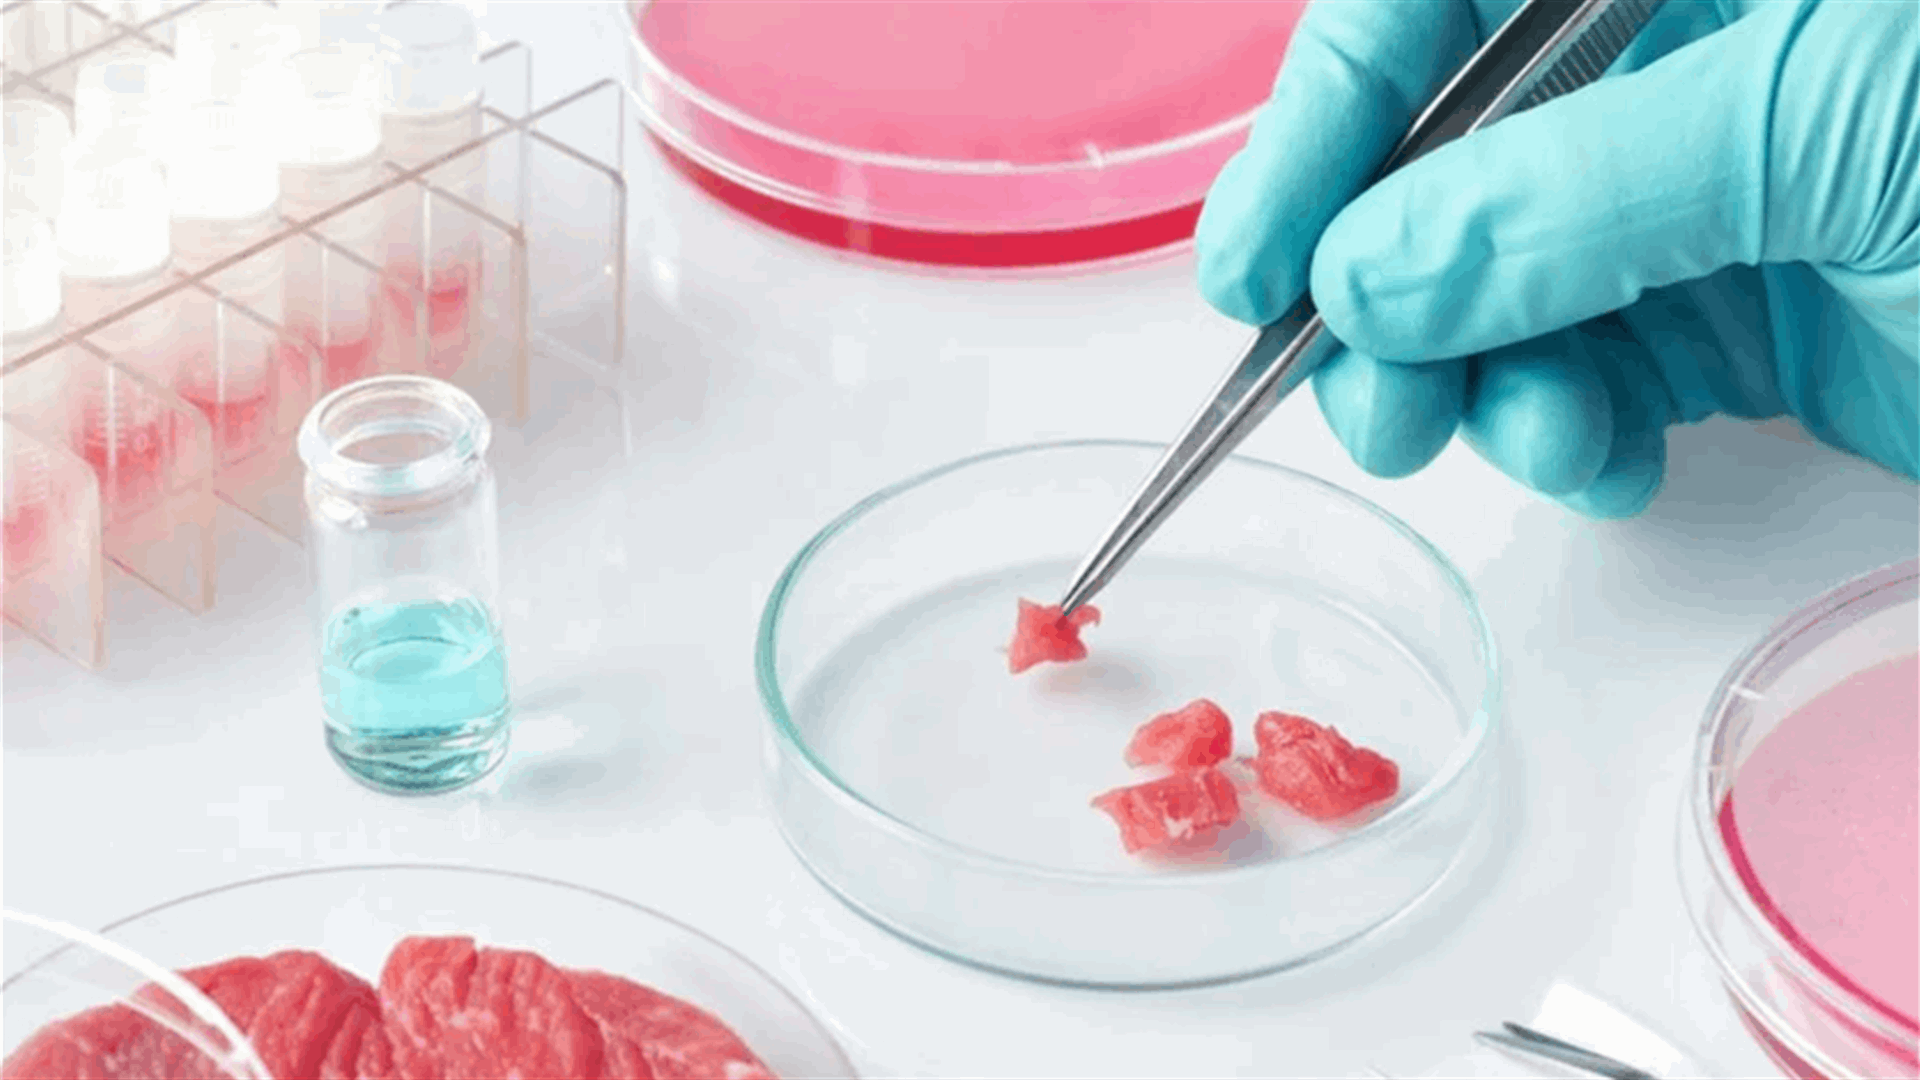 إدارة الغذاء الأميركية توافق على إنتاج اللحوم المُصنعة في المختبرات